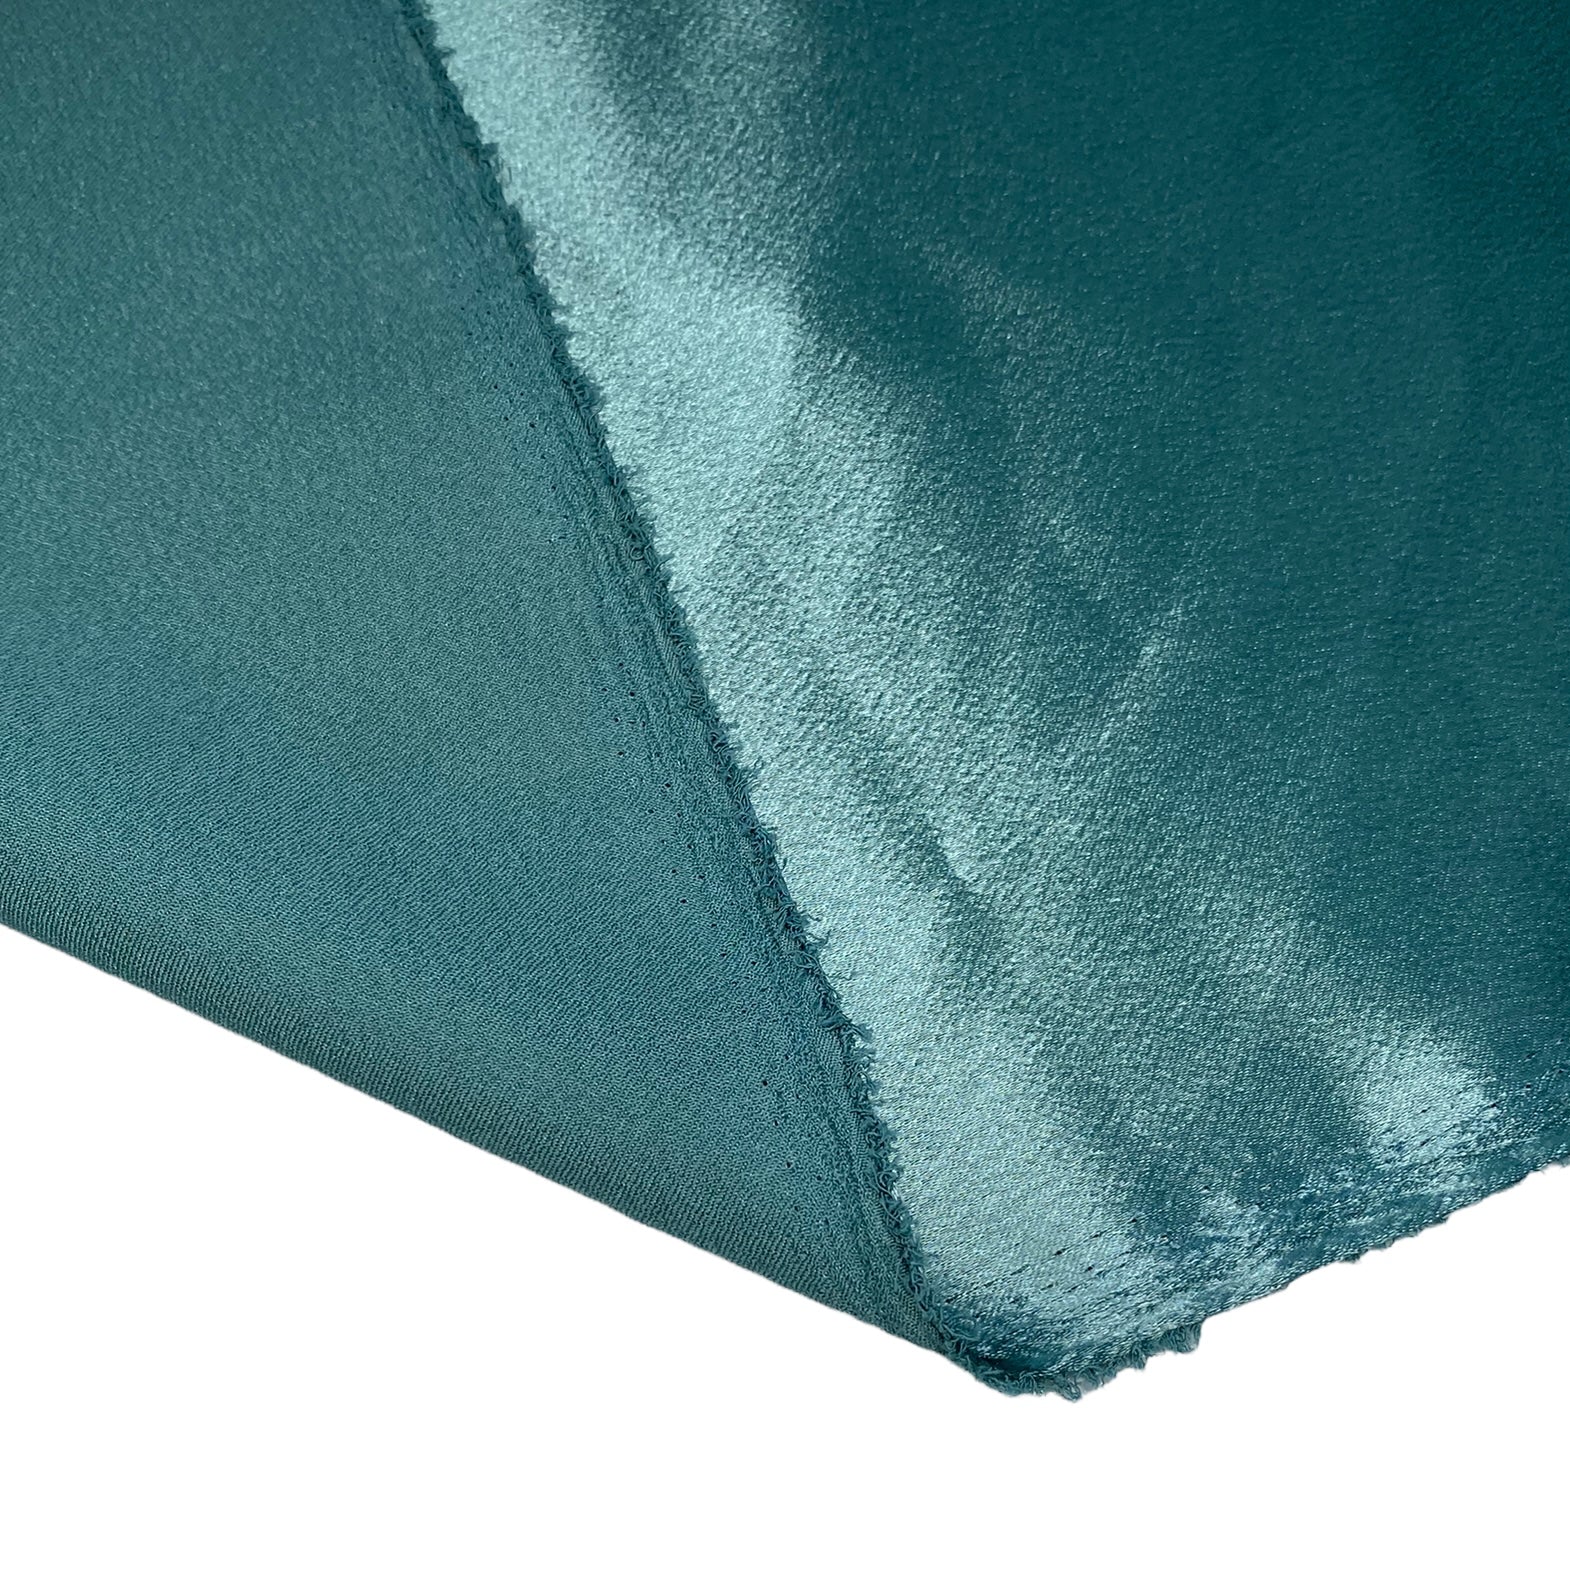 Polyester Crepe Back Satin - 60” - Sage